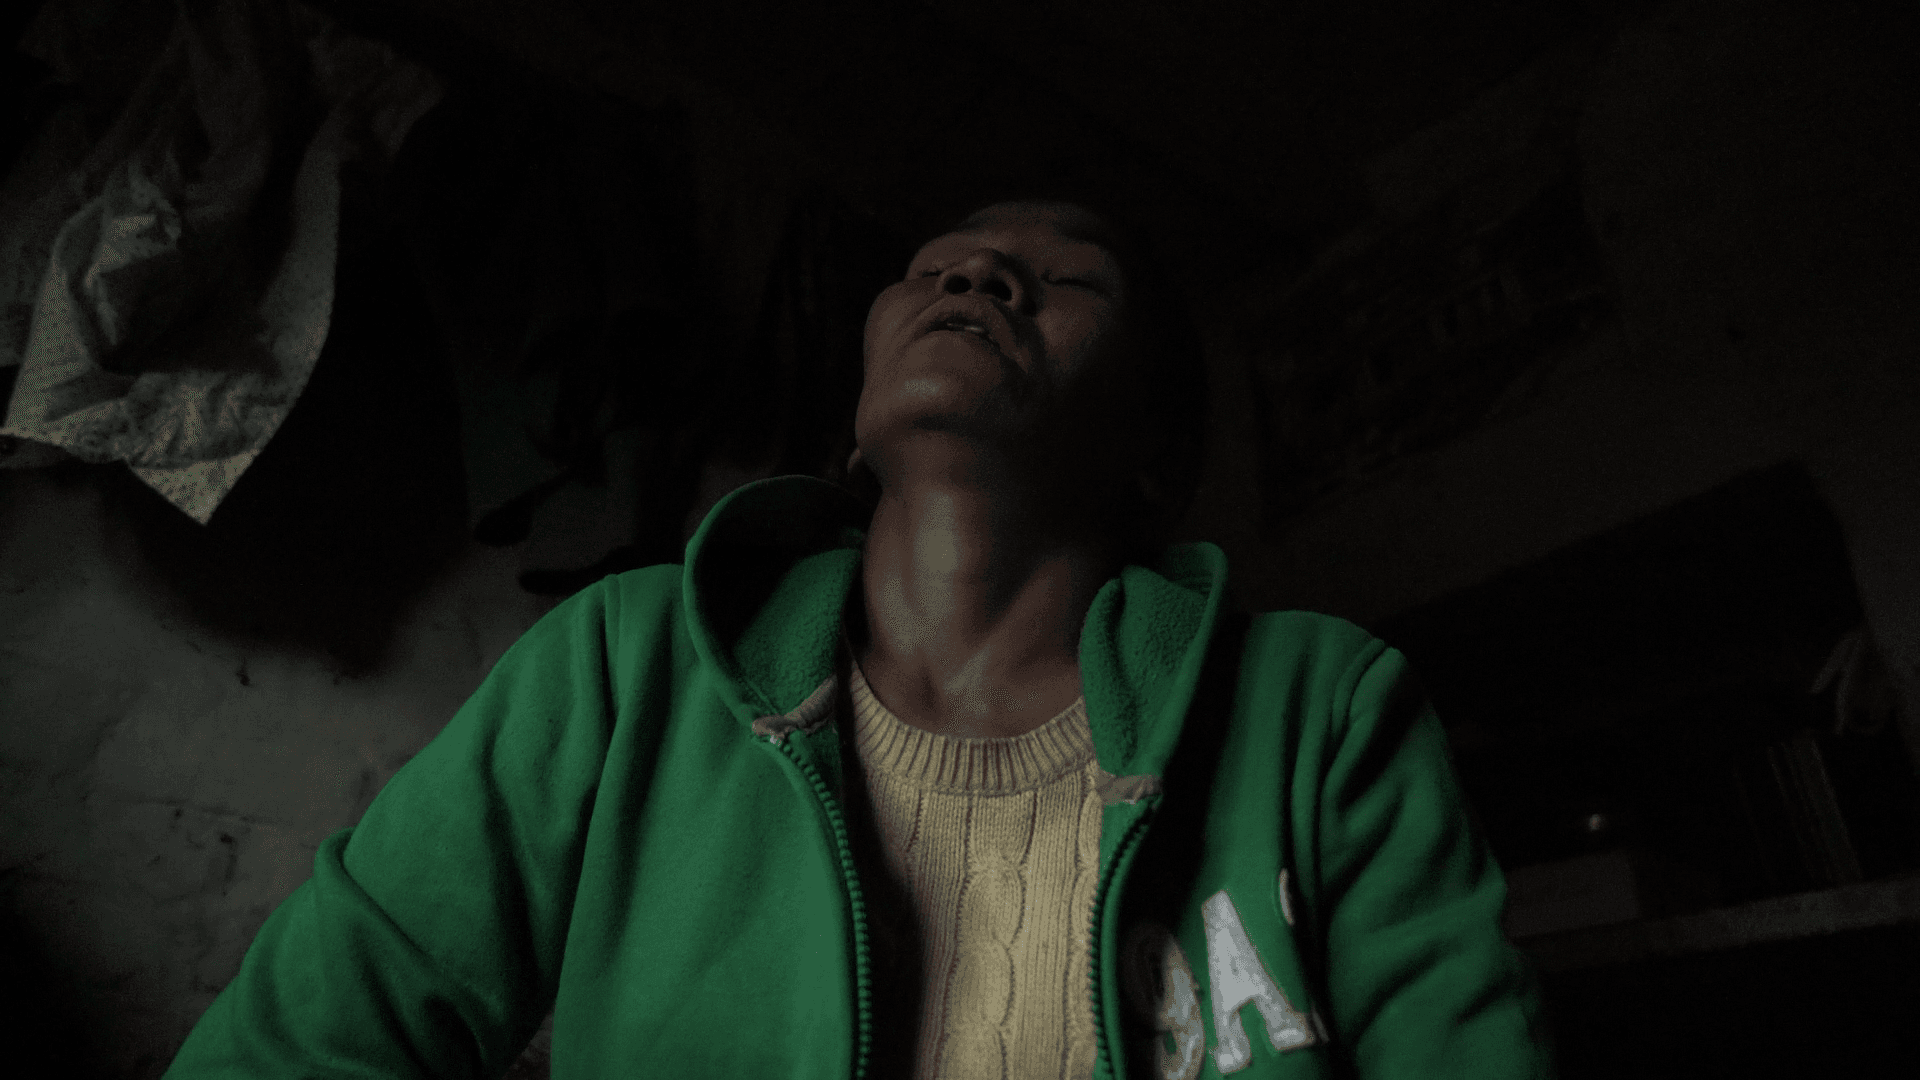 Pani: Women, Drugs and Kathmandu